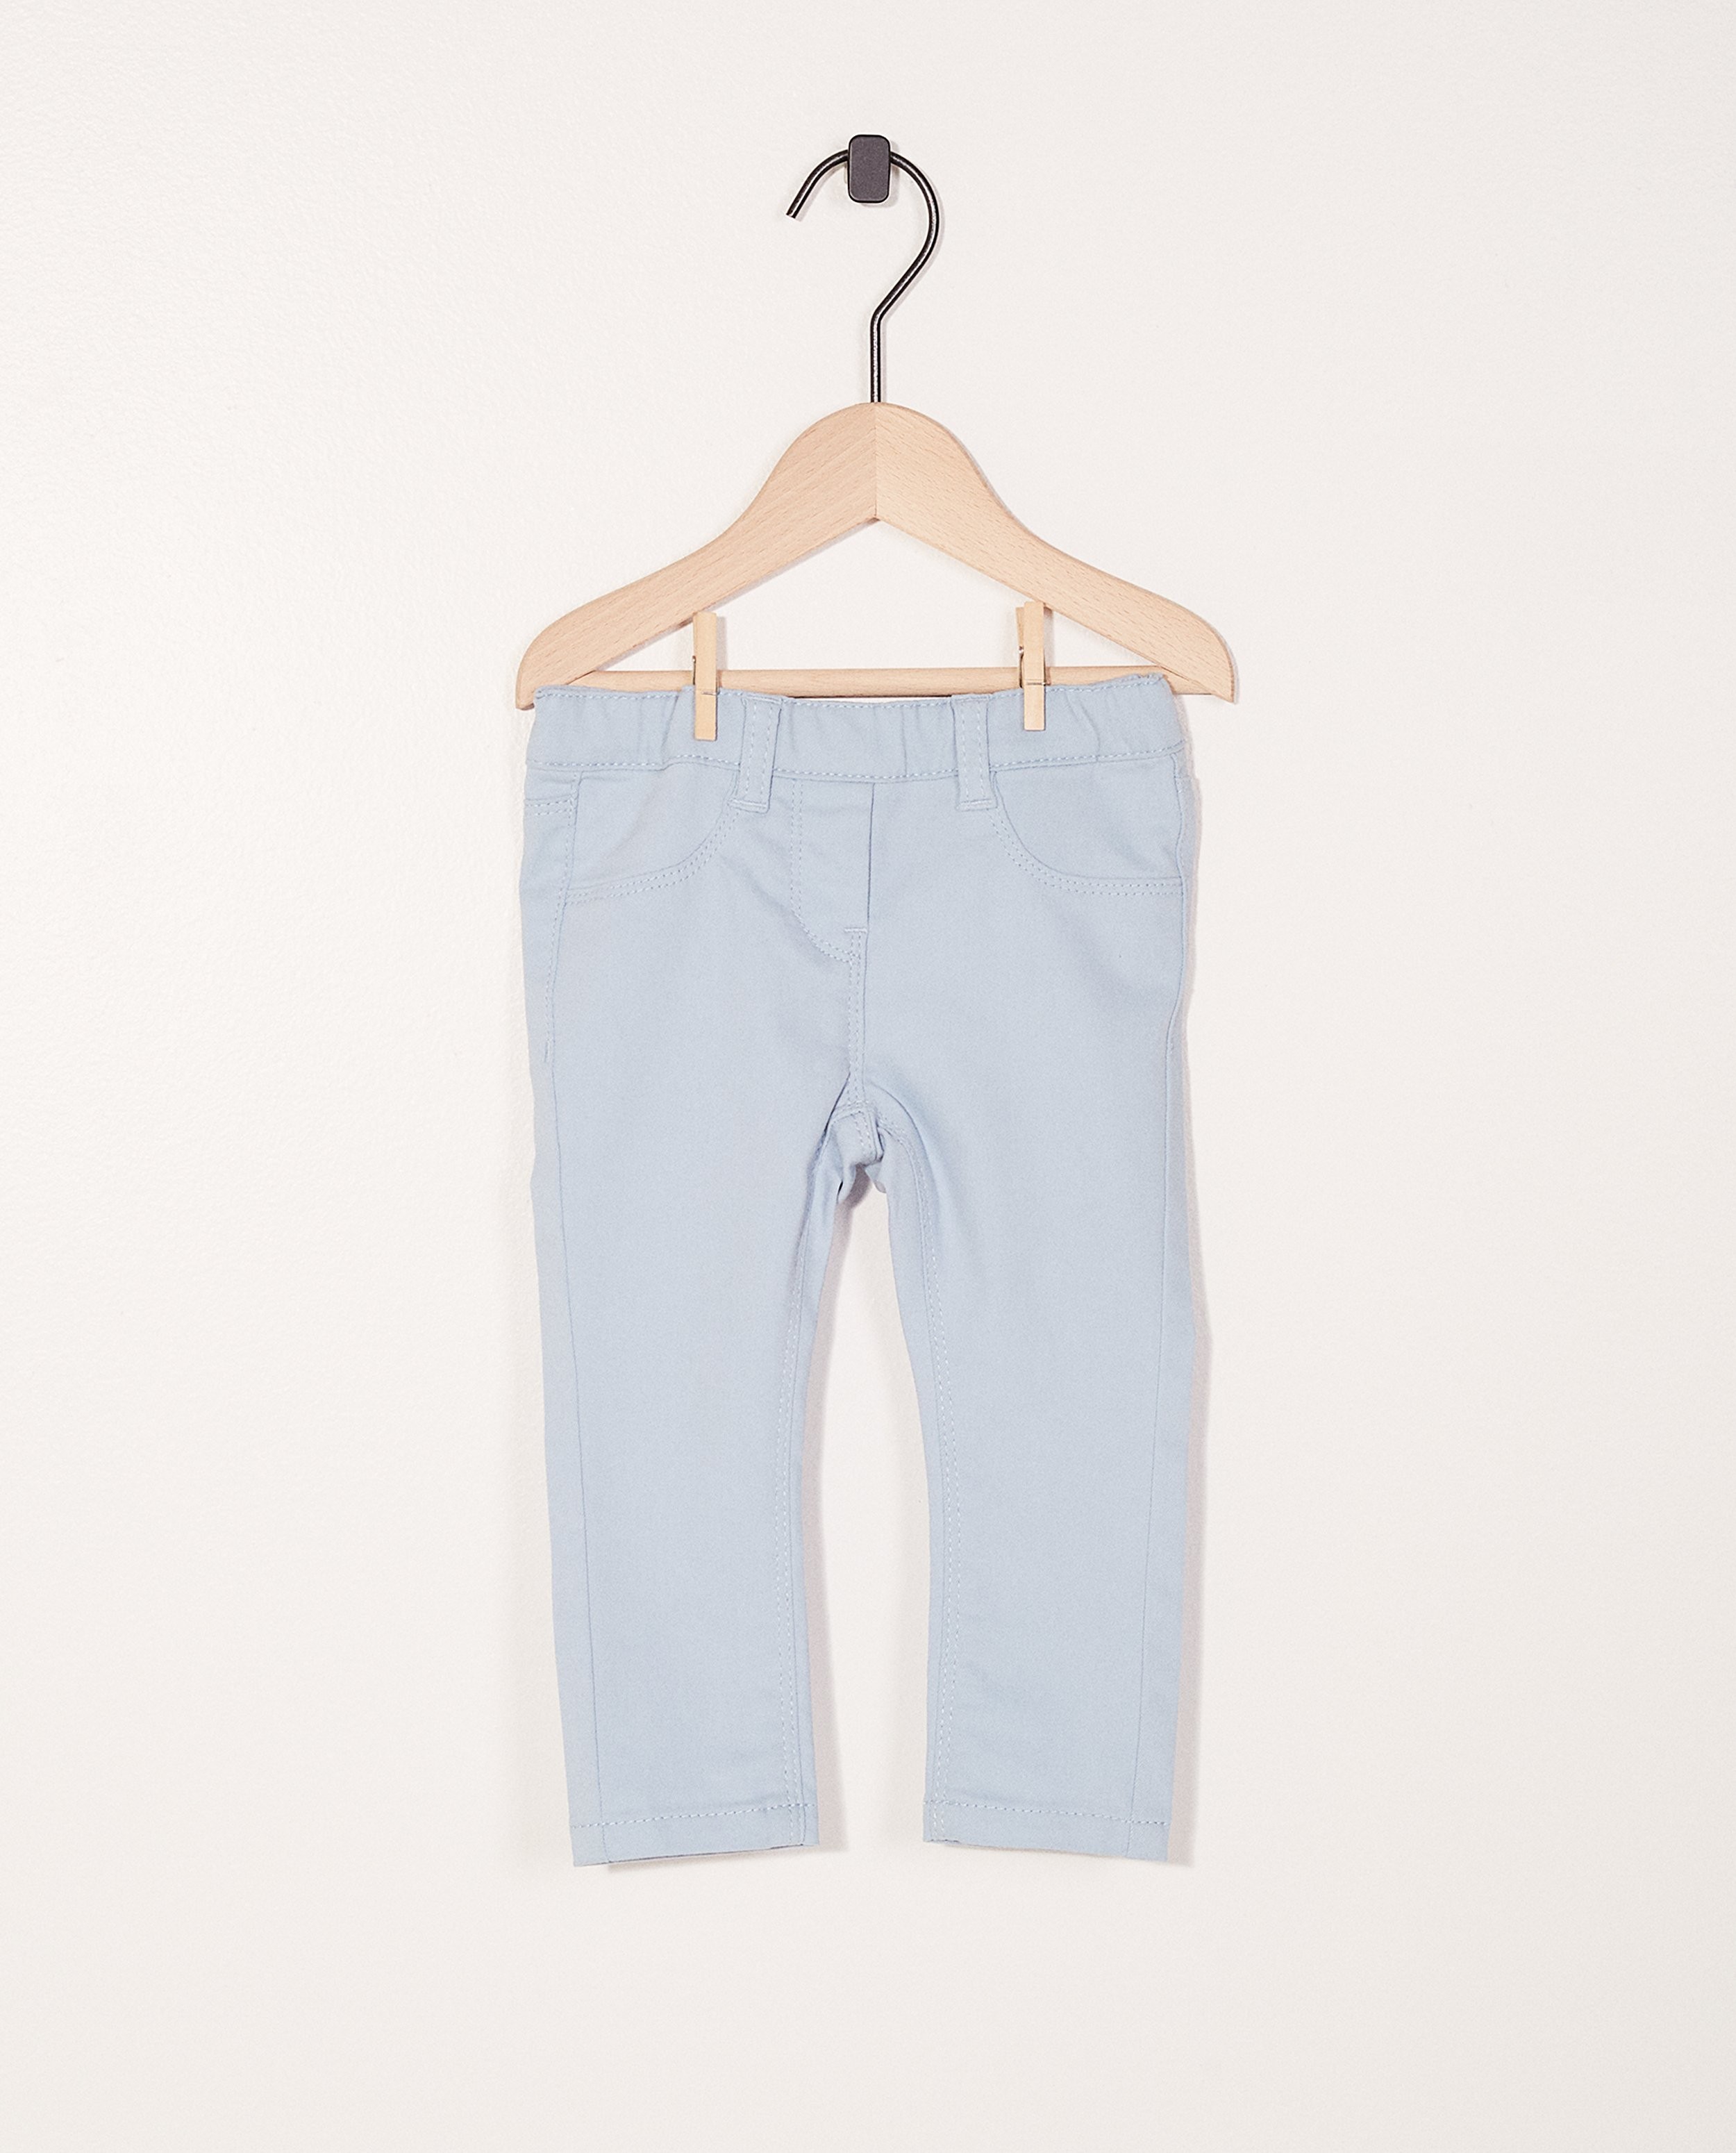 Jeans, taille ajustable - et élastique - JBC